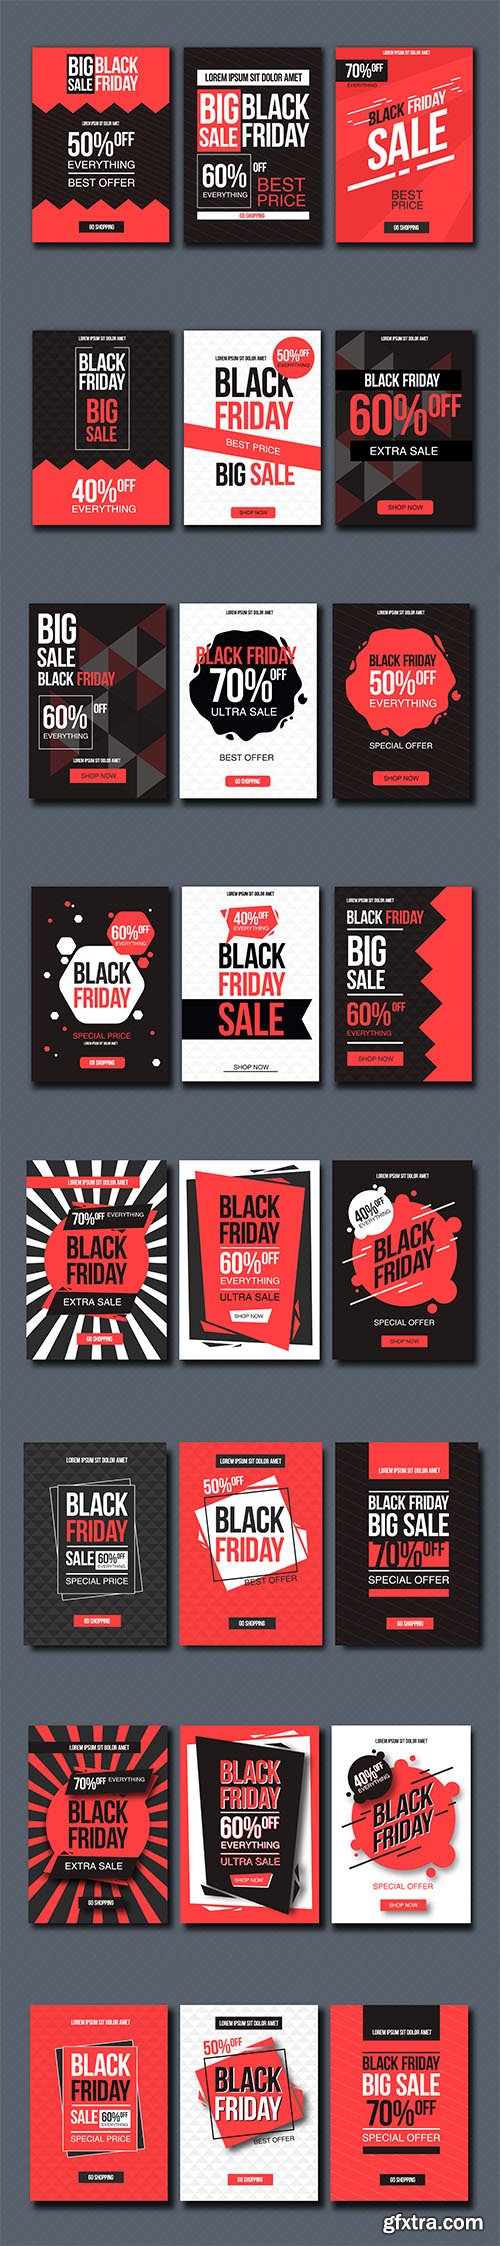 Black Friday Sale Design Template Set